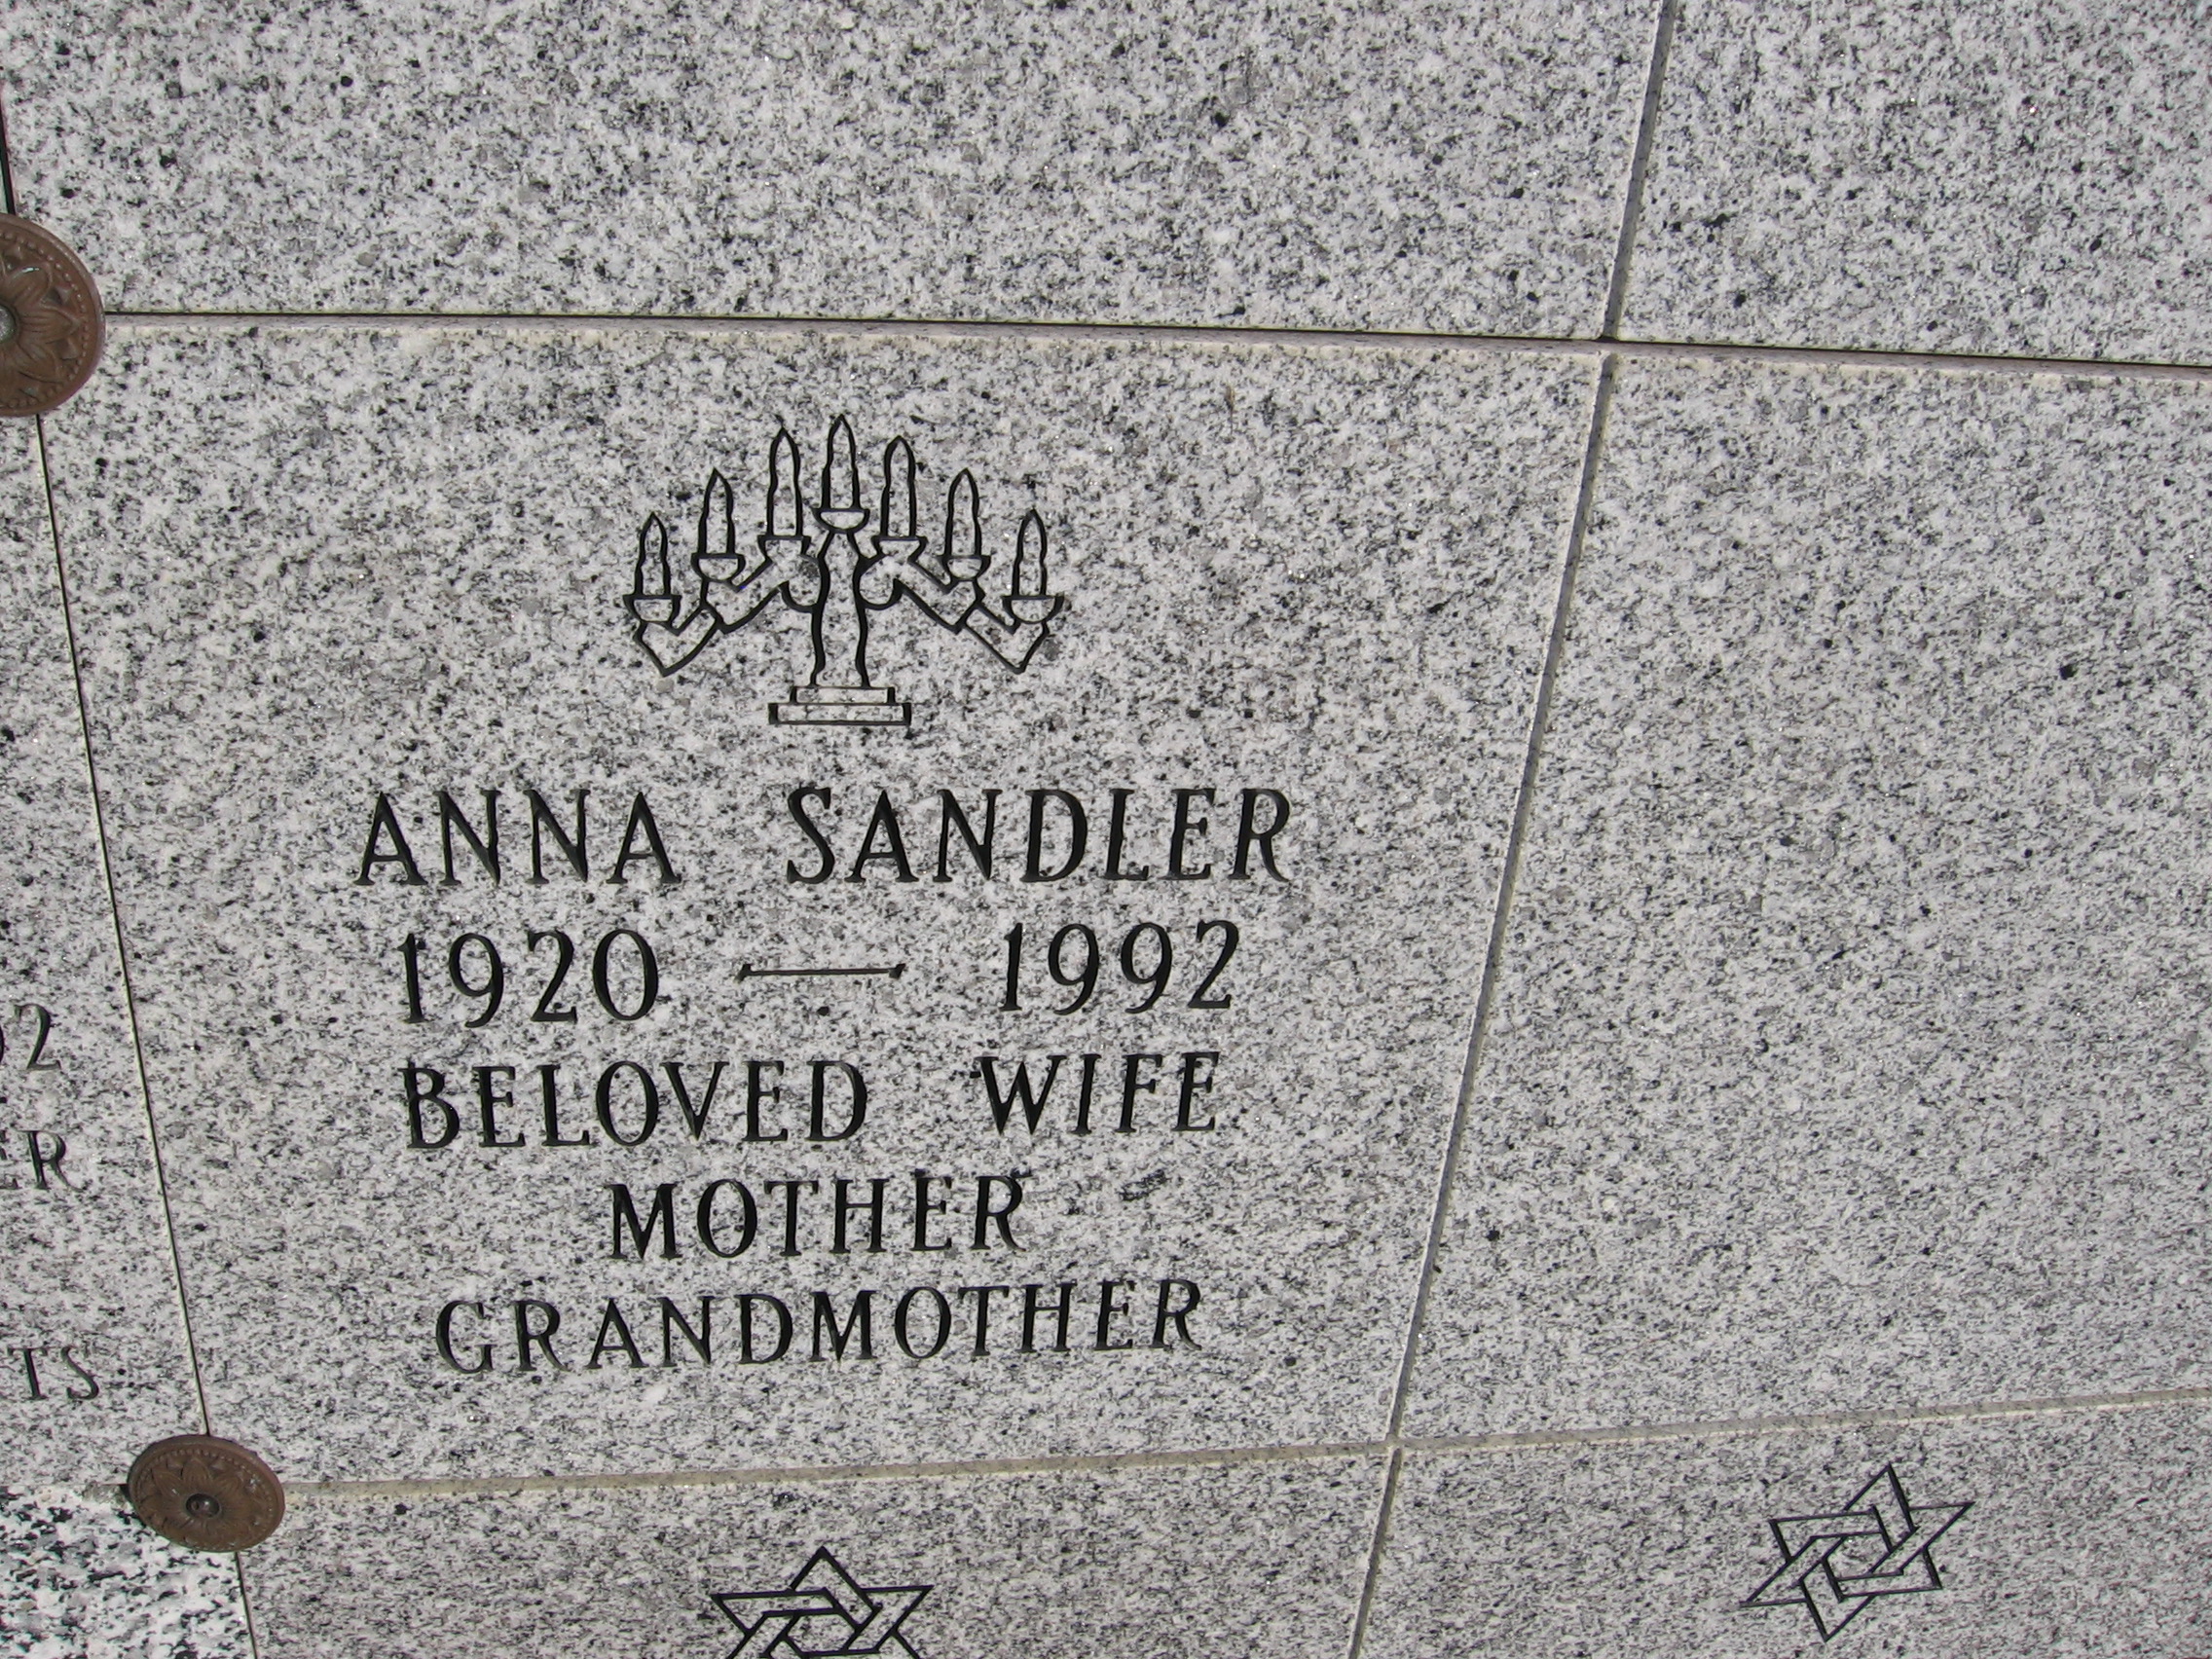 Anna Sandler